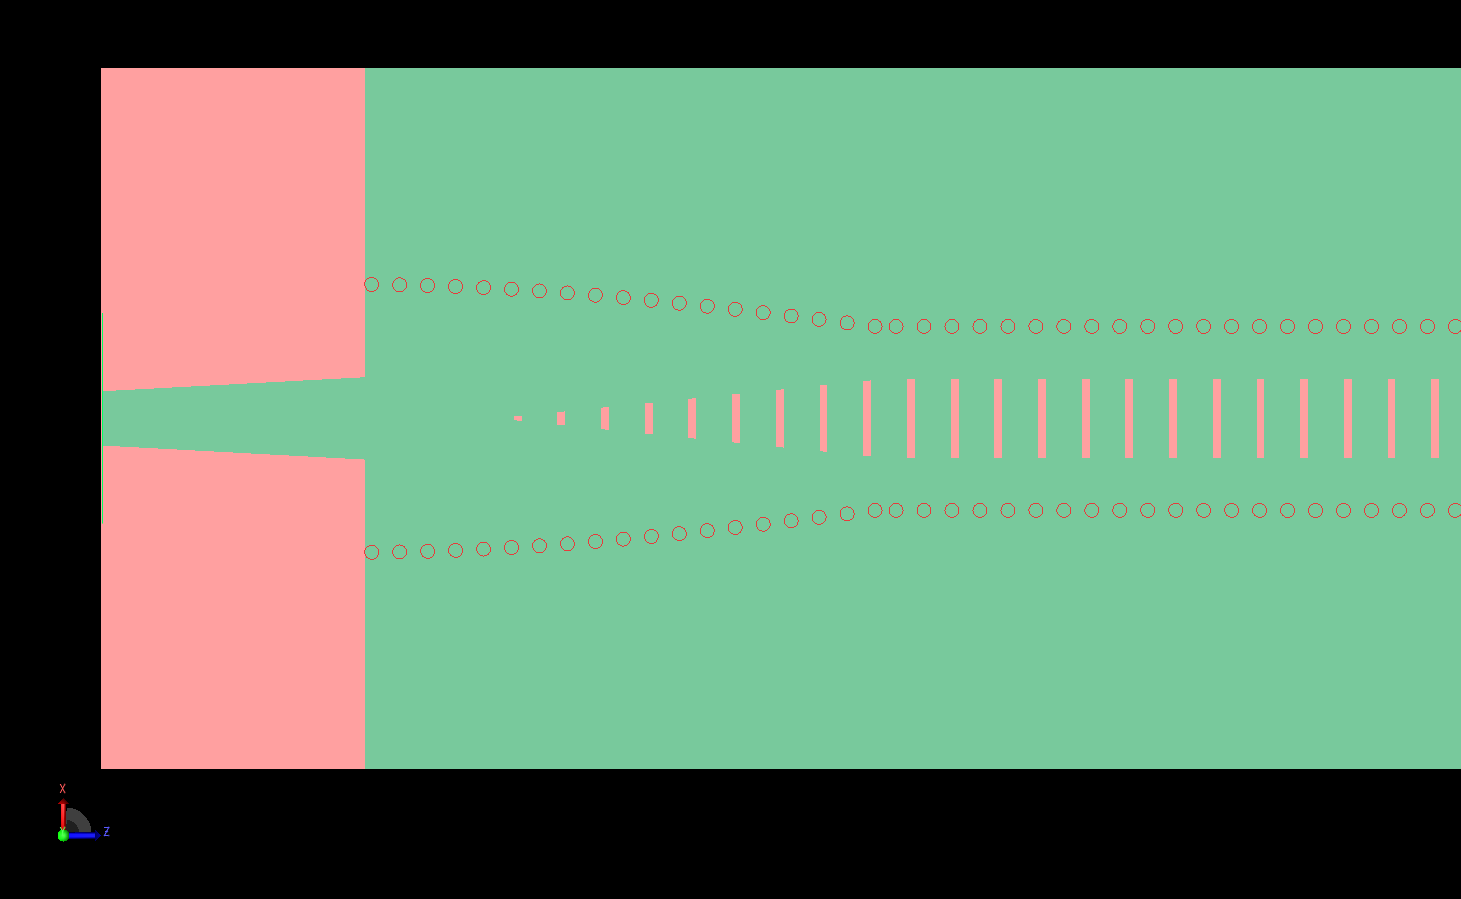 Figura 2: Una vista detallada de un extremo de la antena muestra las ranuras cónicas y la vía curva situada bajo la línea microstrip.